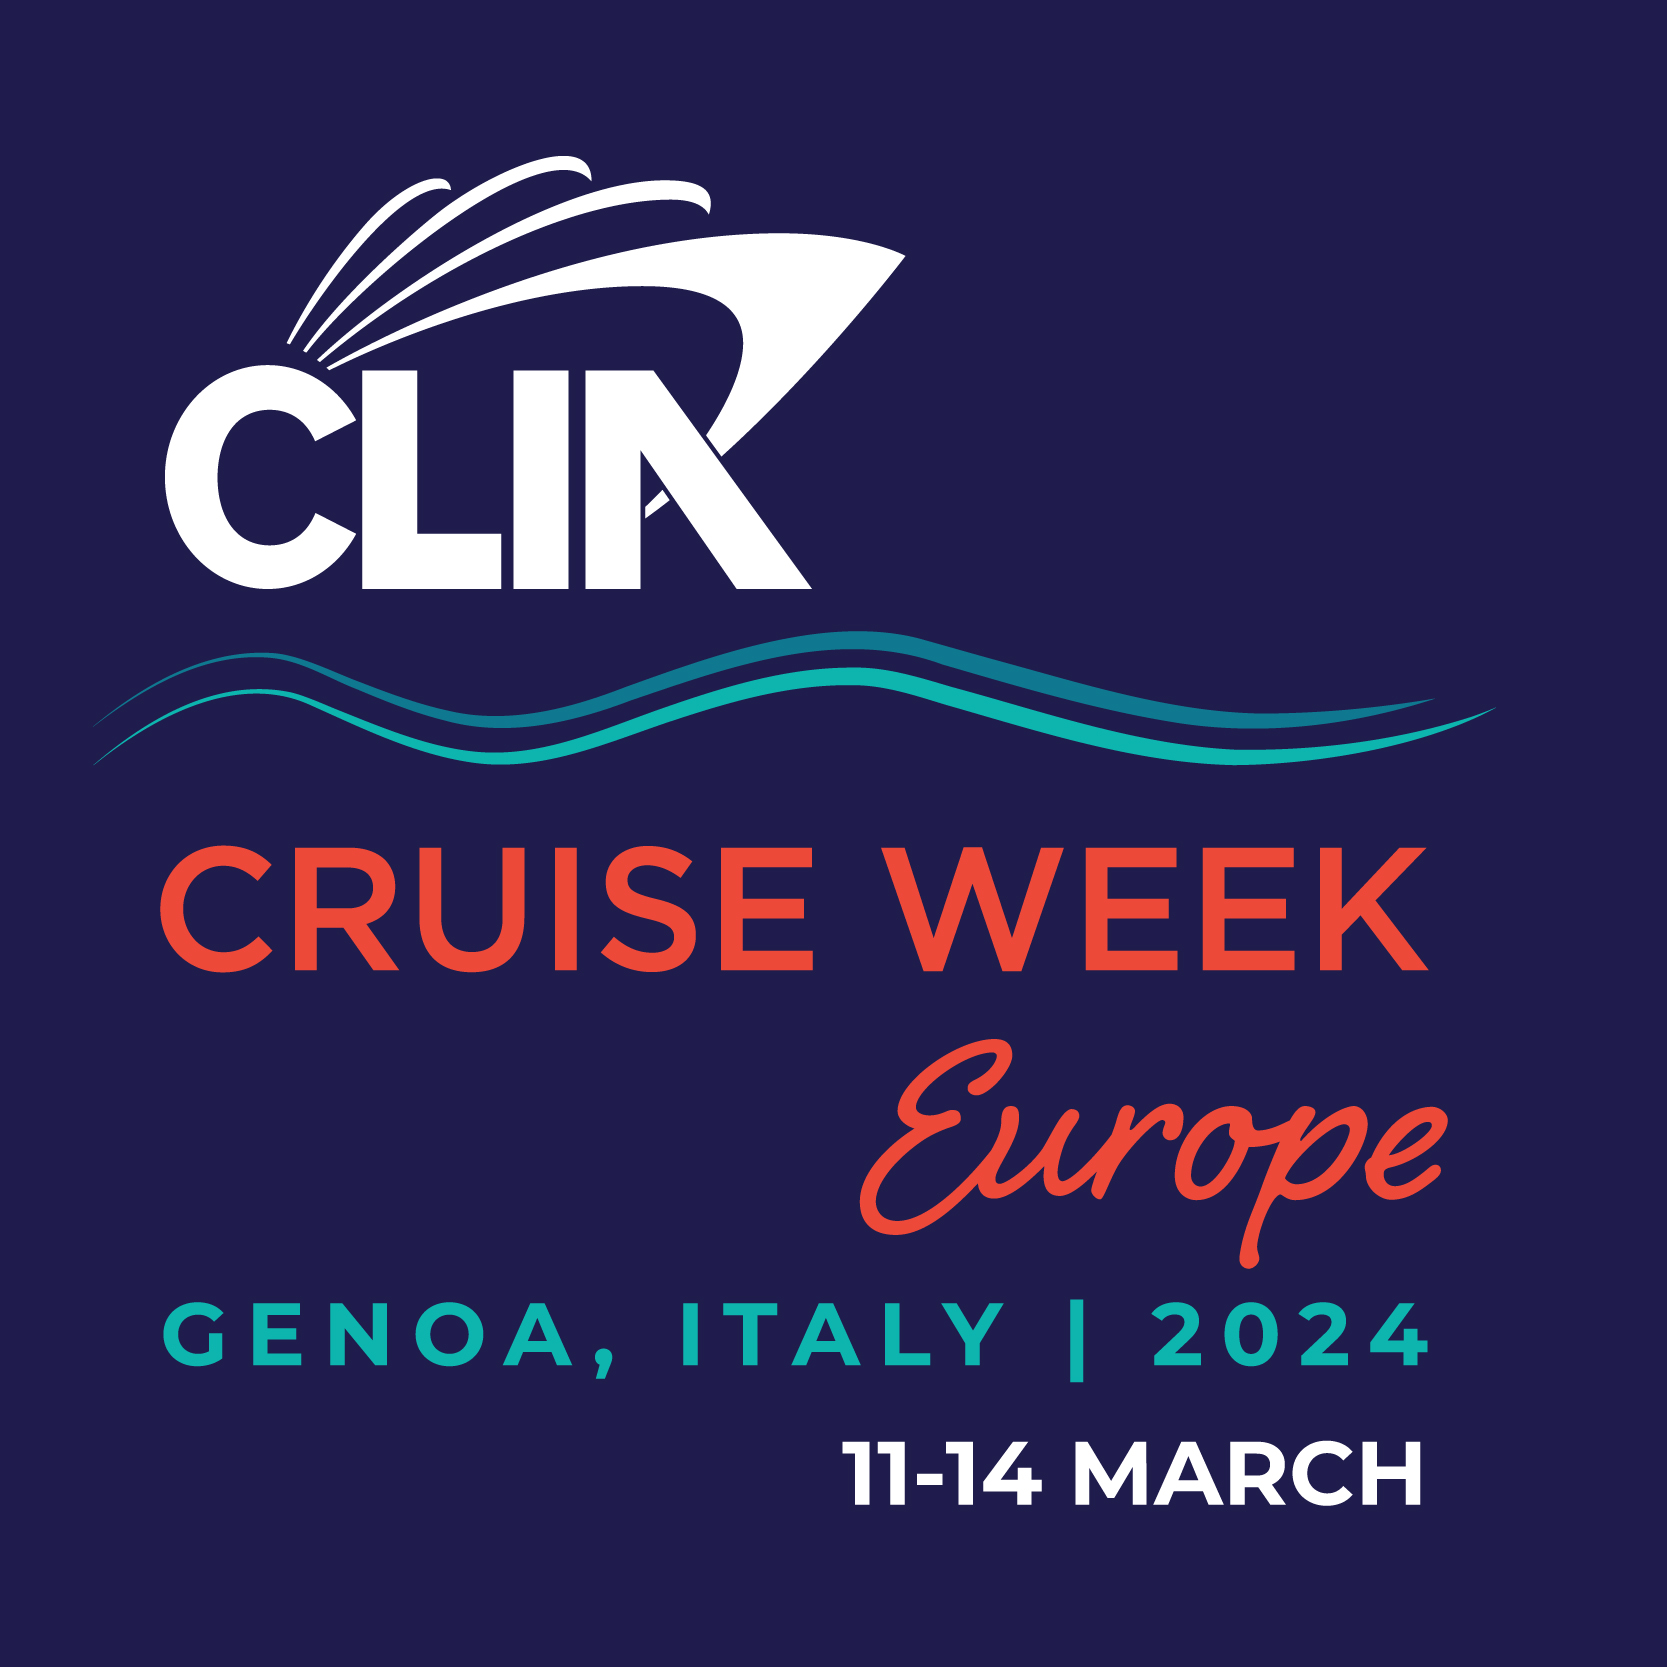 CLIA Cruise Week - Europe 2024